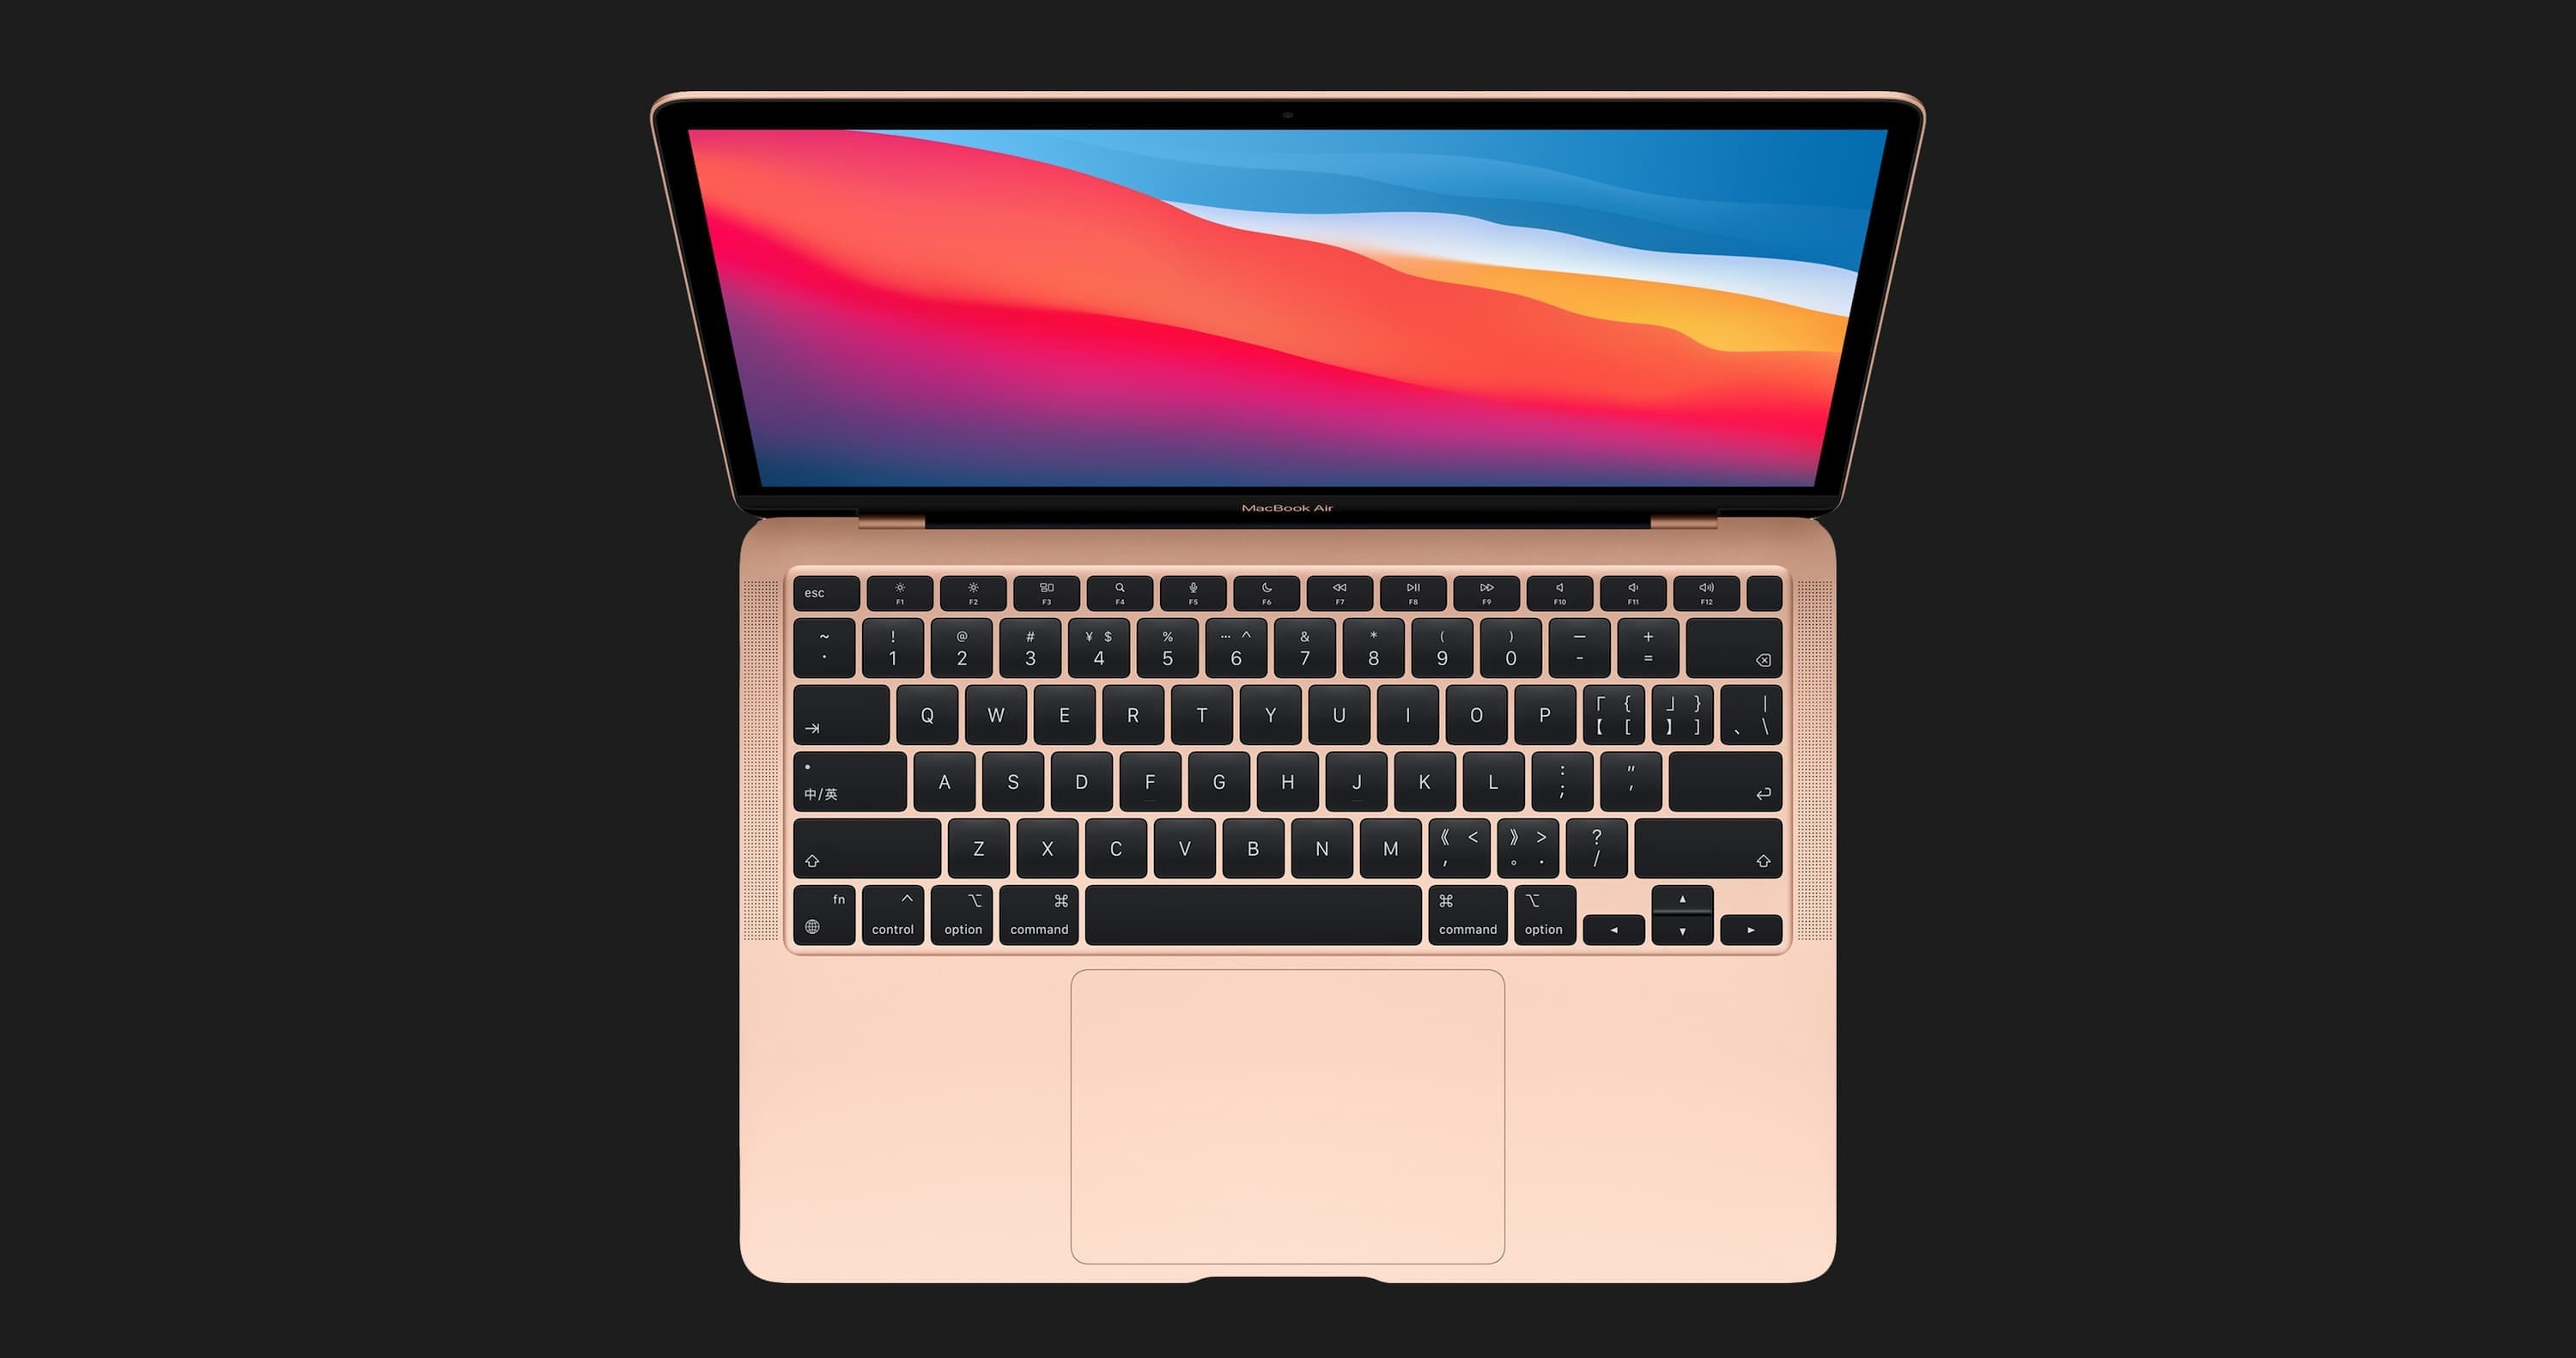 б/у Apple MacBook Air 13, 2020 (256GB) (MWTJ2) (Отличное состояние)